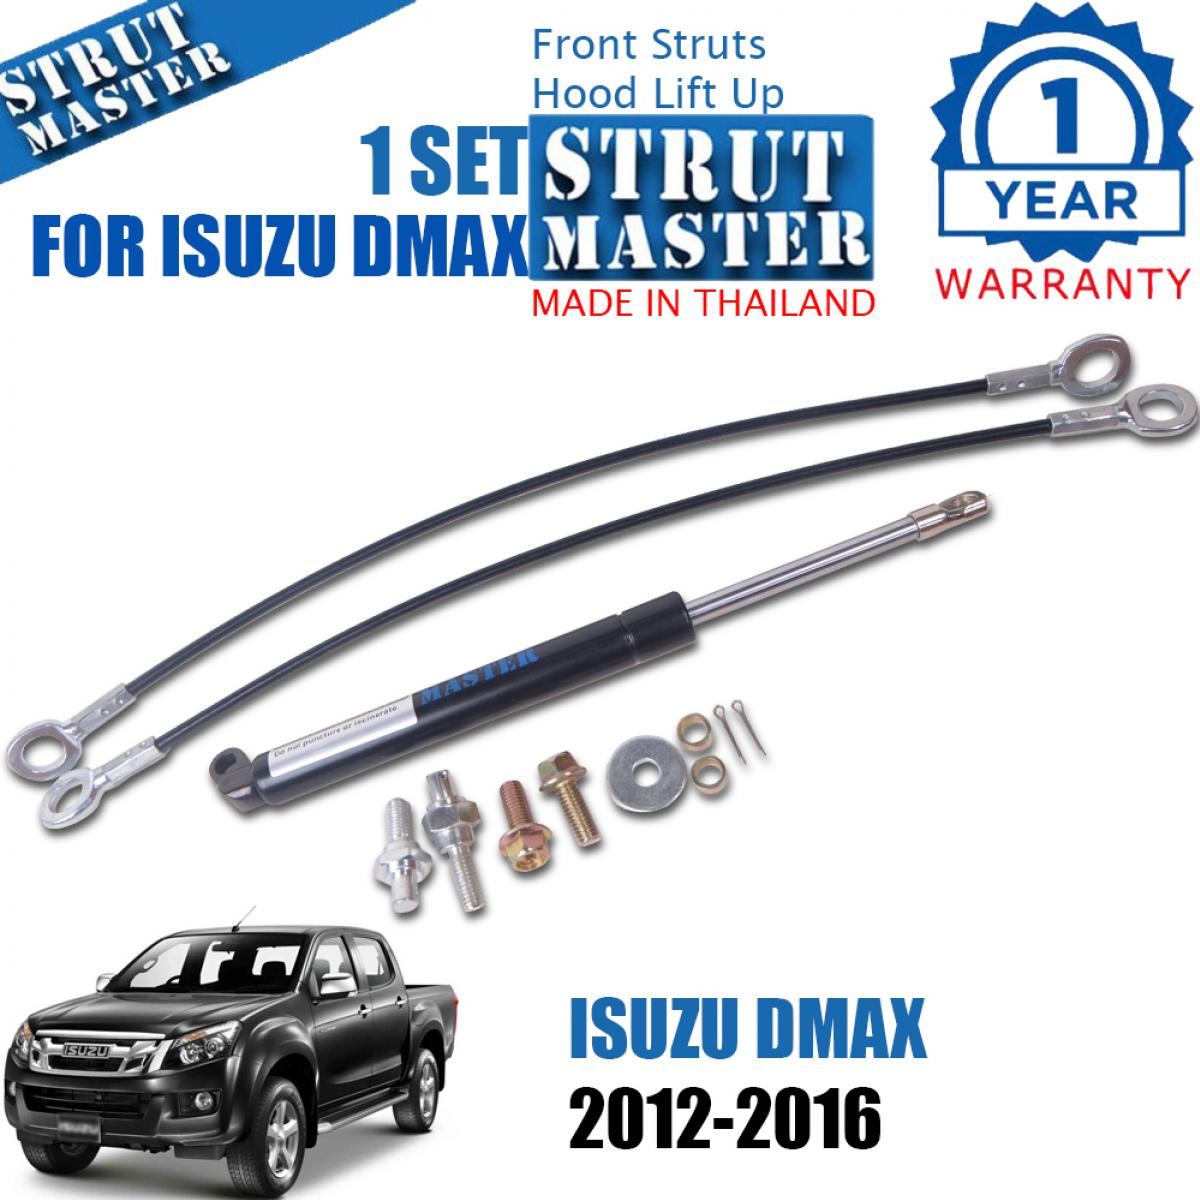 ชุดโช้คค้ำฝากระบะท้าย สำหรับรถ Isuzu Dmax D-Max ปี 2012-2015 สีดำ จำนวน 1 ชุด